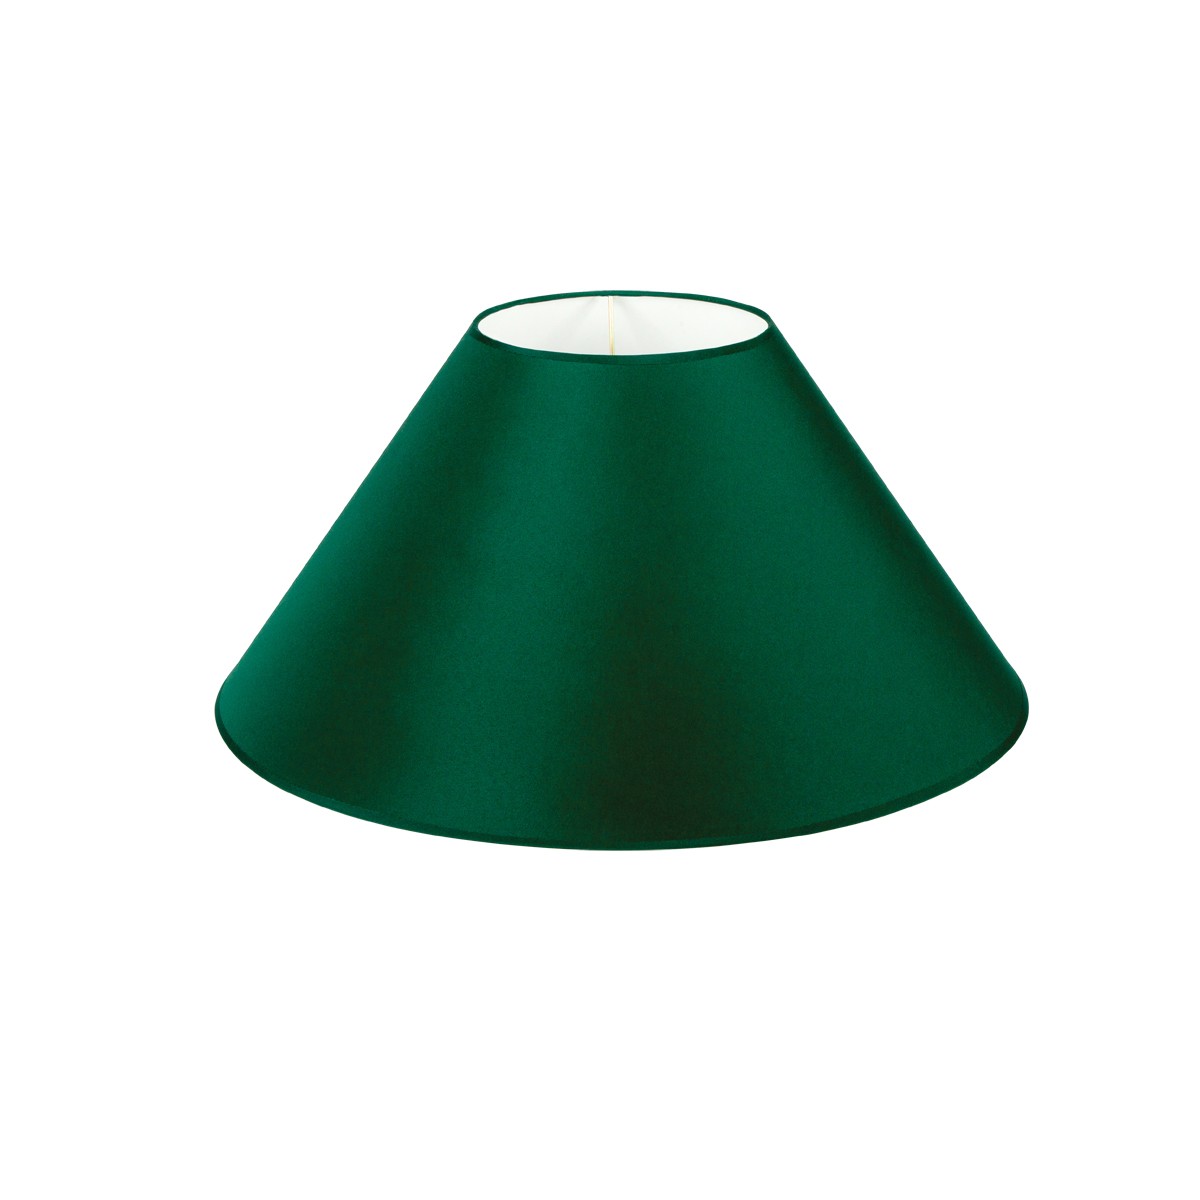 Καπέλο Μονόχρωμο Στρογγυλό Φ45cm Κάτω Πλευρά- Πράσινο Χρώμα        VK/E27/E14/D45/GR